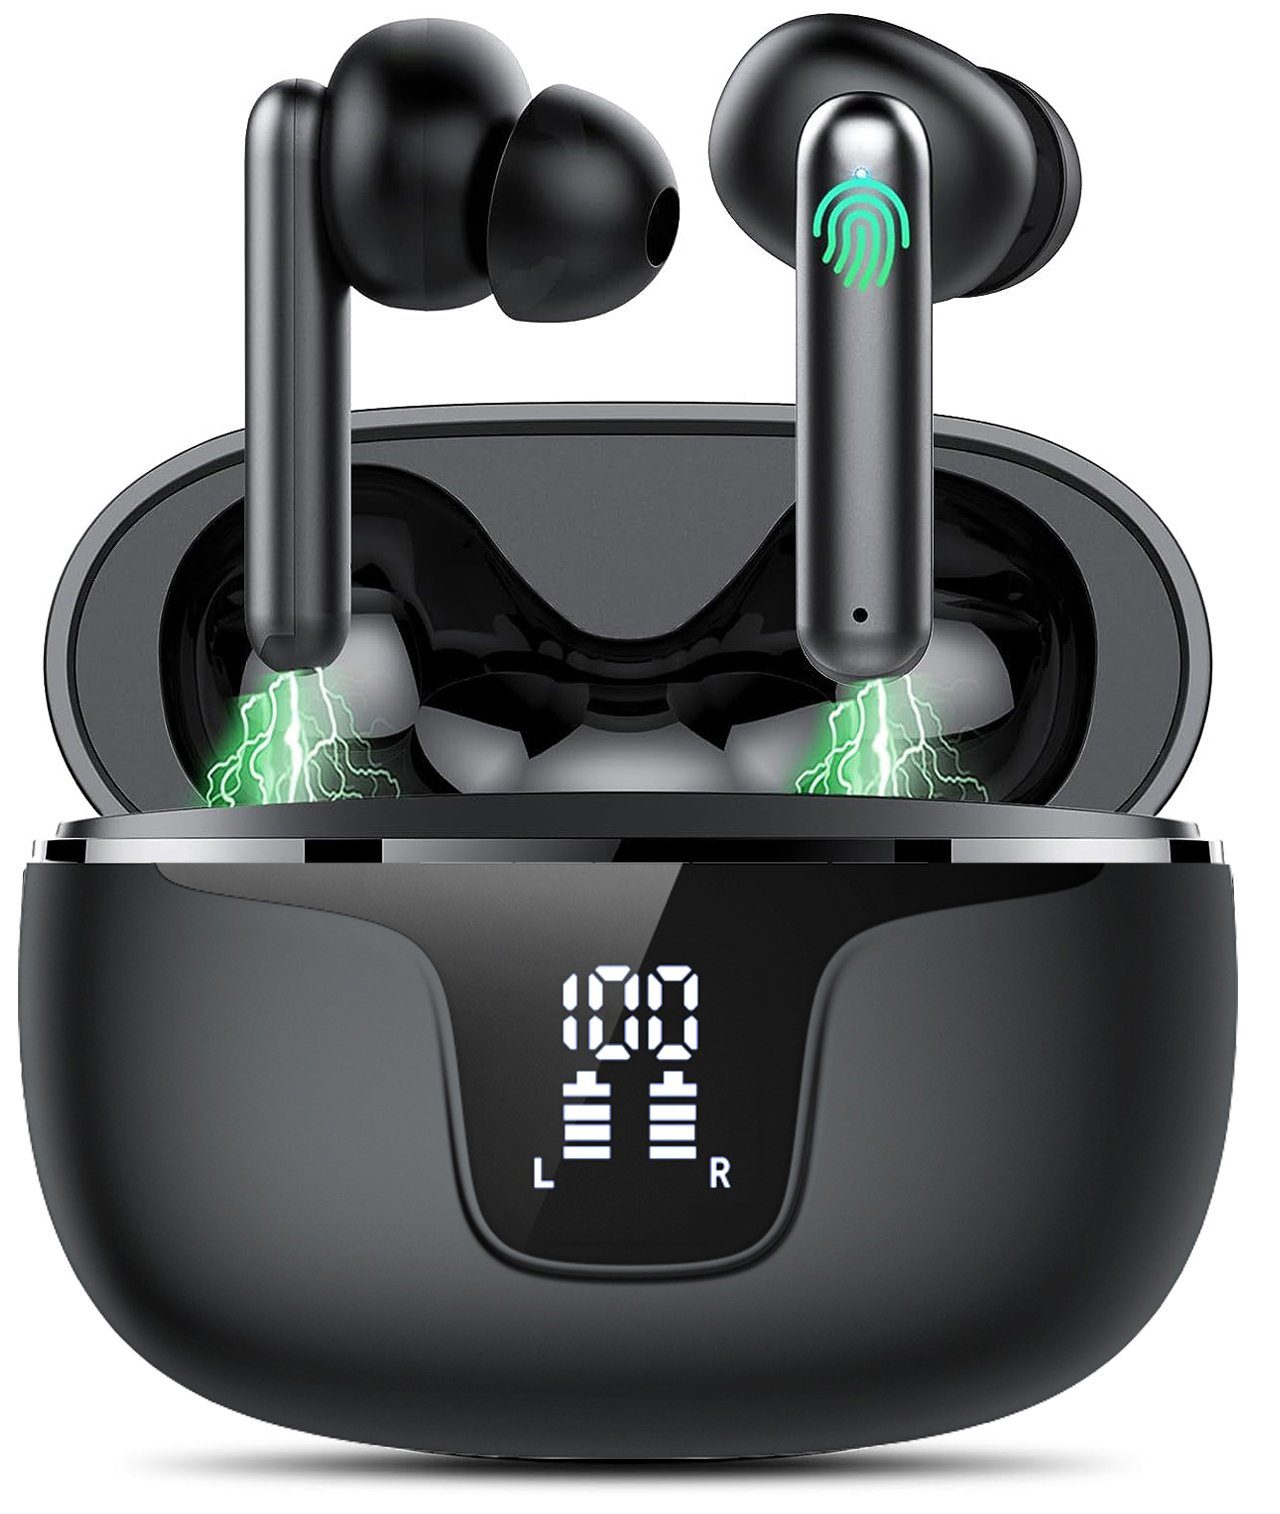 Mutoy Bluetooth Kopfhörer,Kopfhörer Kabellos Bluetooth 5.3,In Ear Kopfhörer In-Ear-Kopfhörer (Voice Assistant, ANC Noise Cancelling Ohrhörer, 36 Stunden Spielzeit, IPX5 Wasserdicht,LED Anzeige,USB-C Schnelles Aufladen) Schwarz